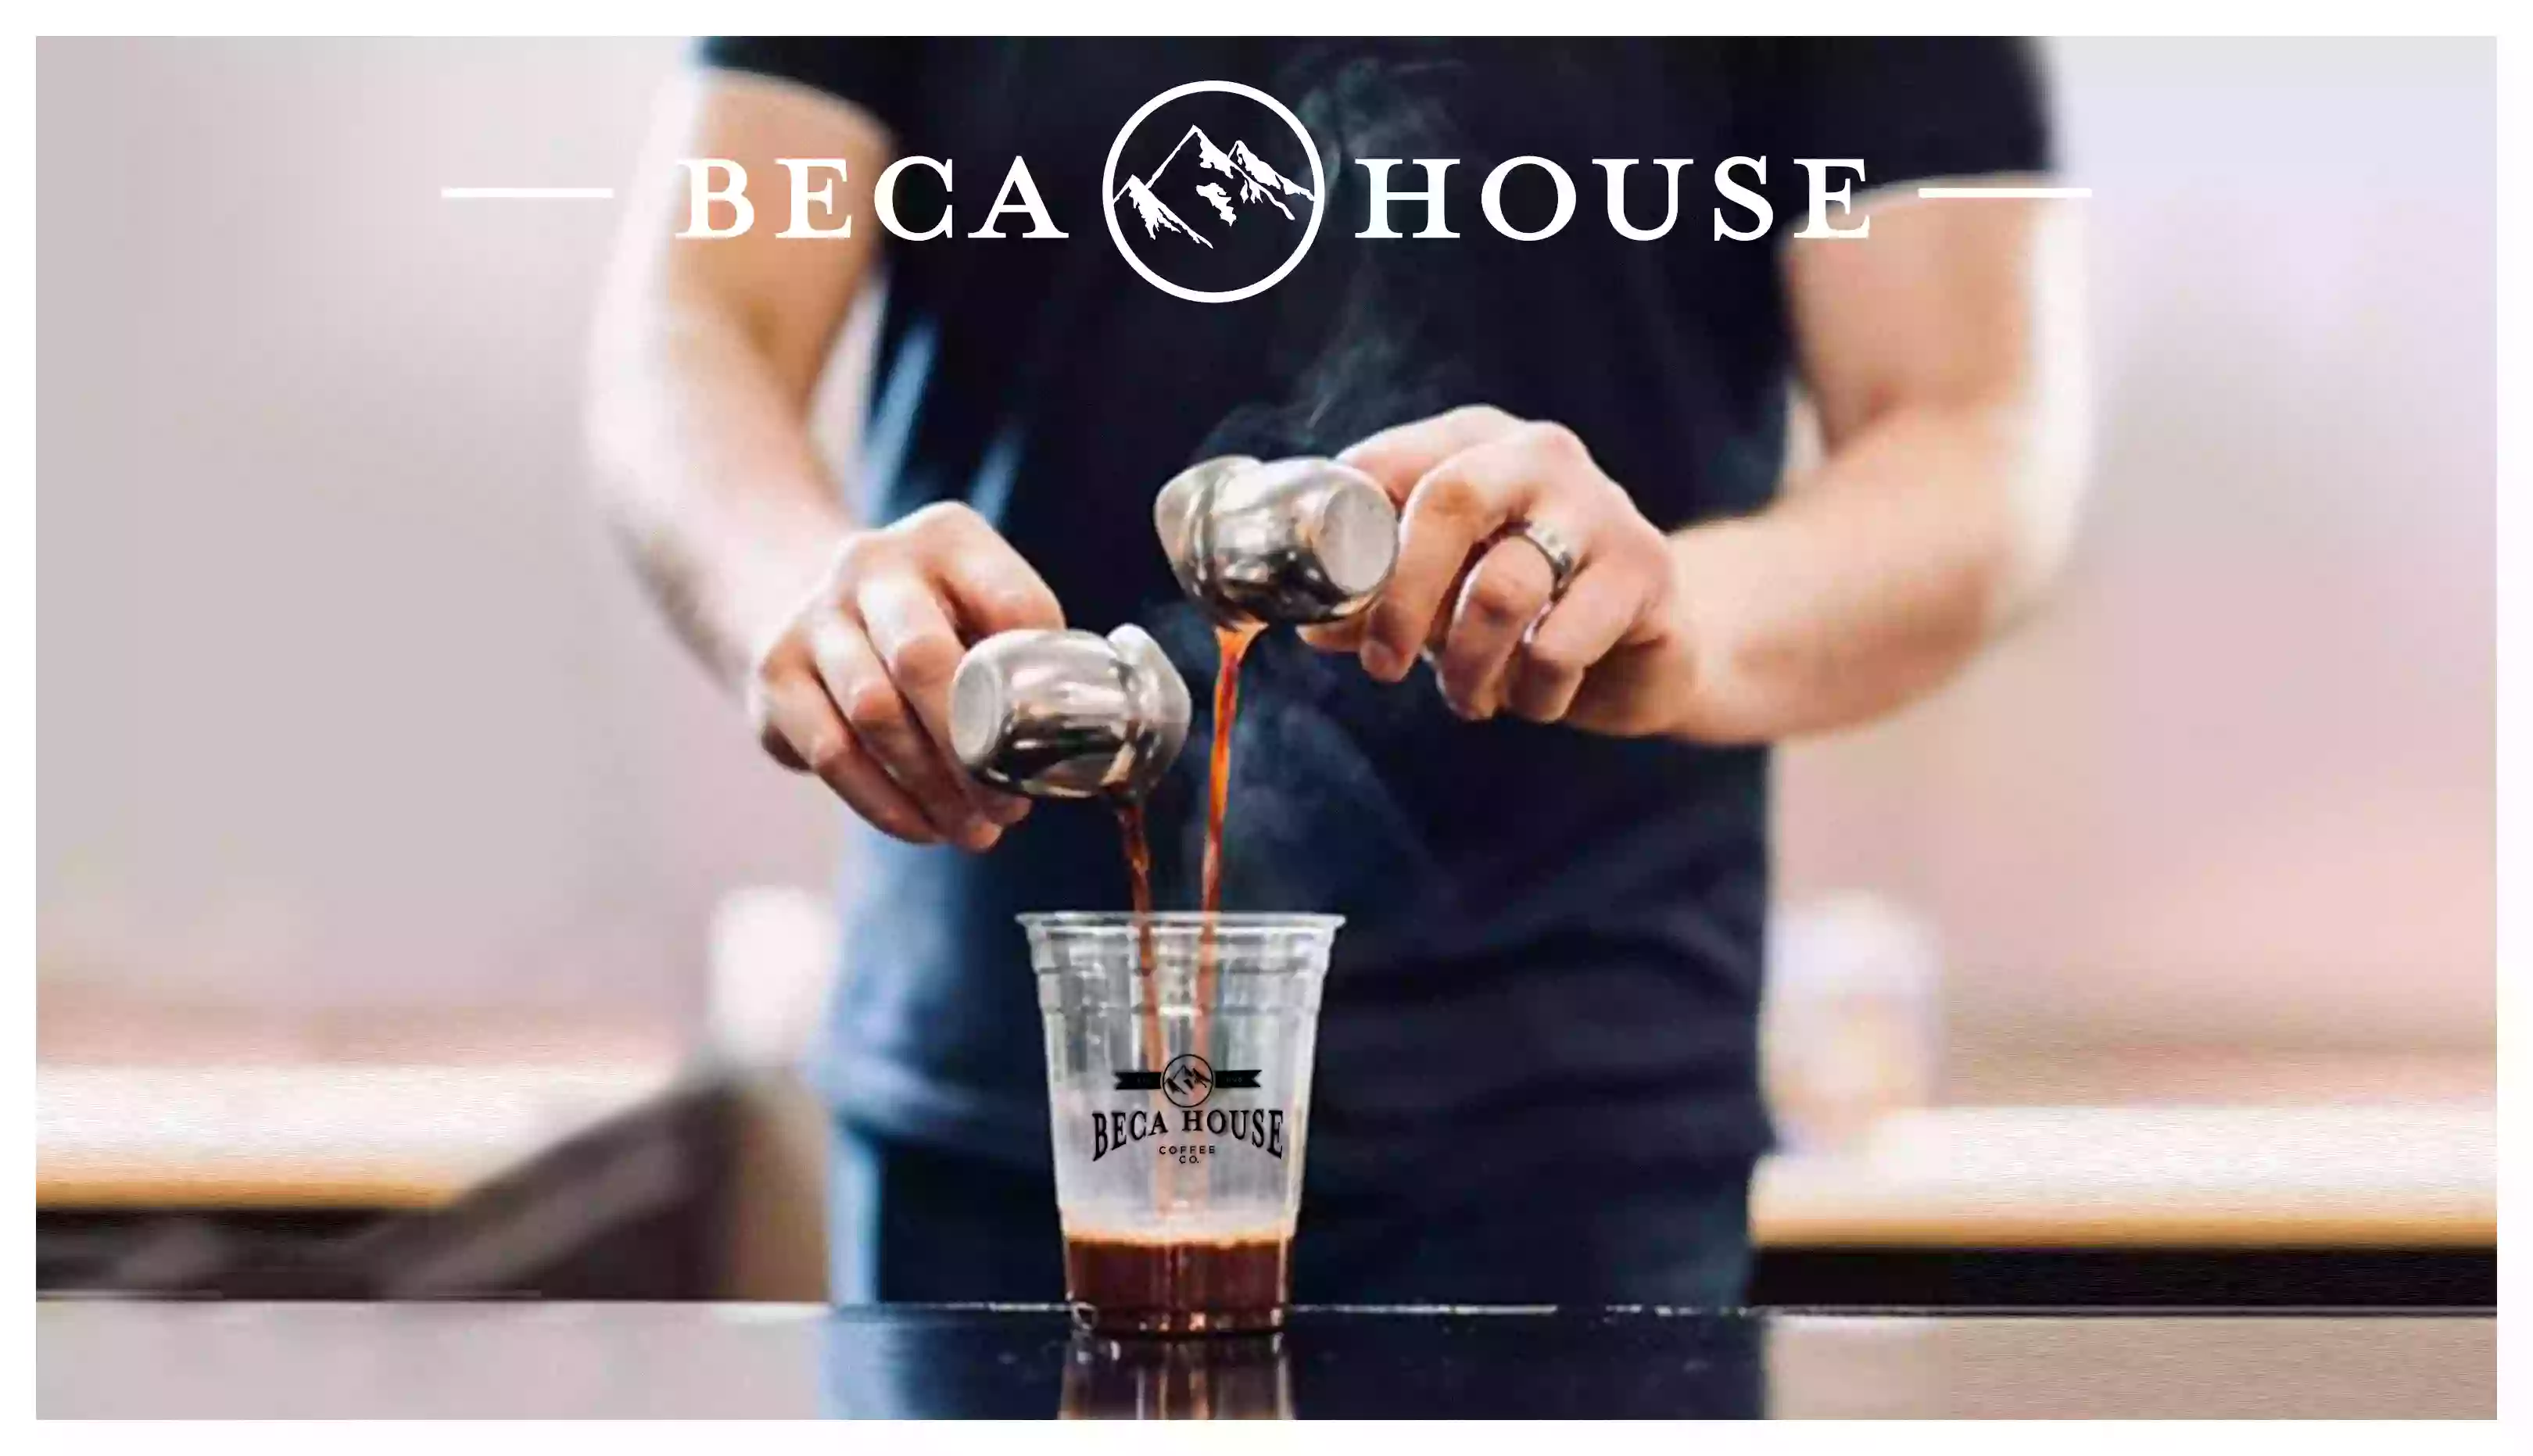 Beca House Coffee